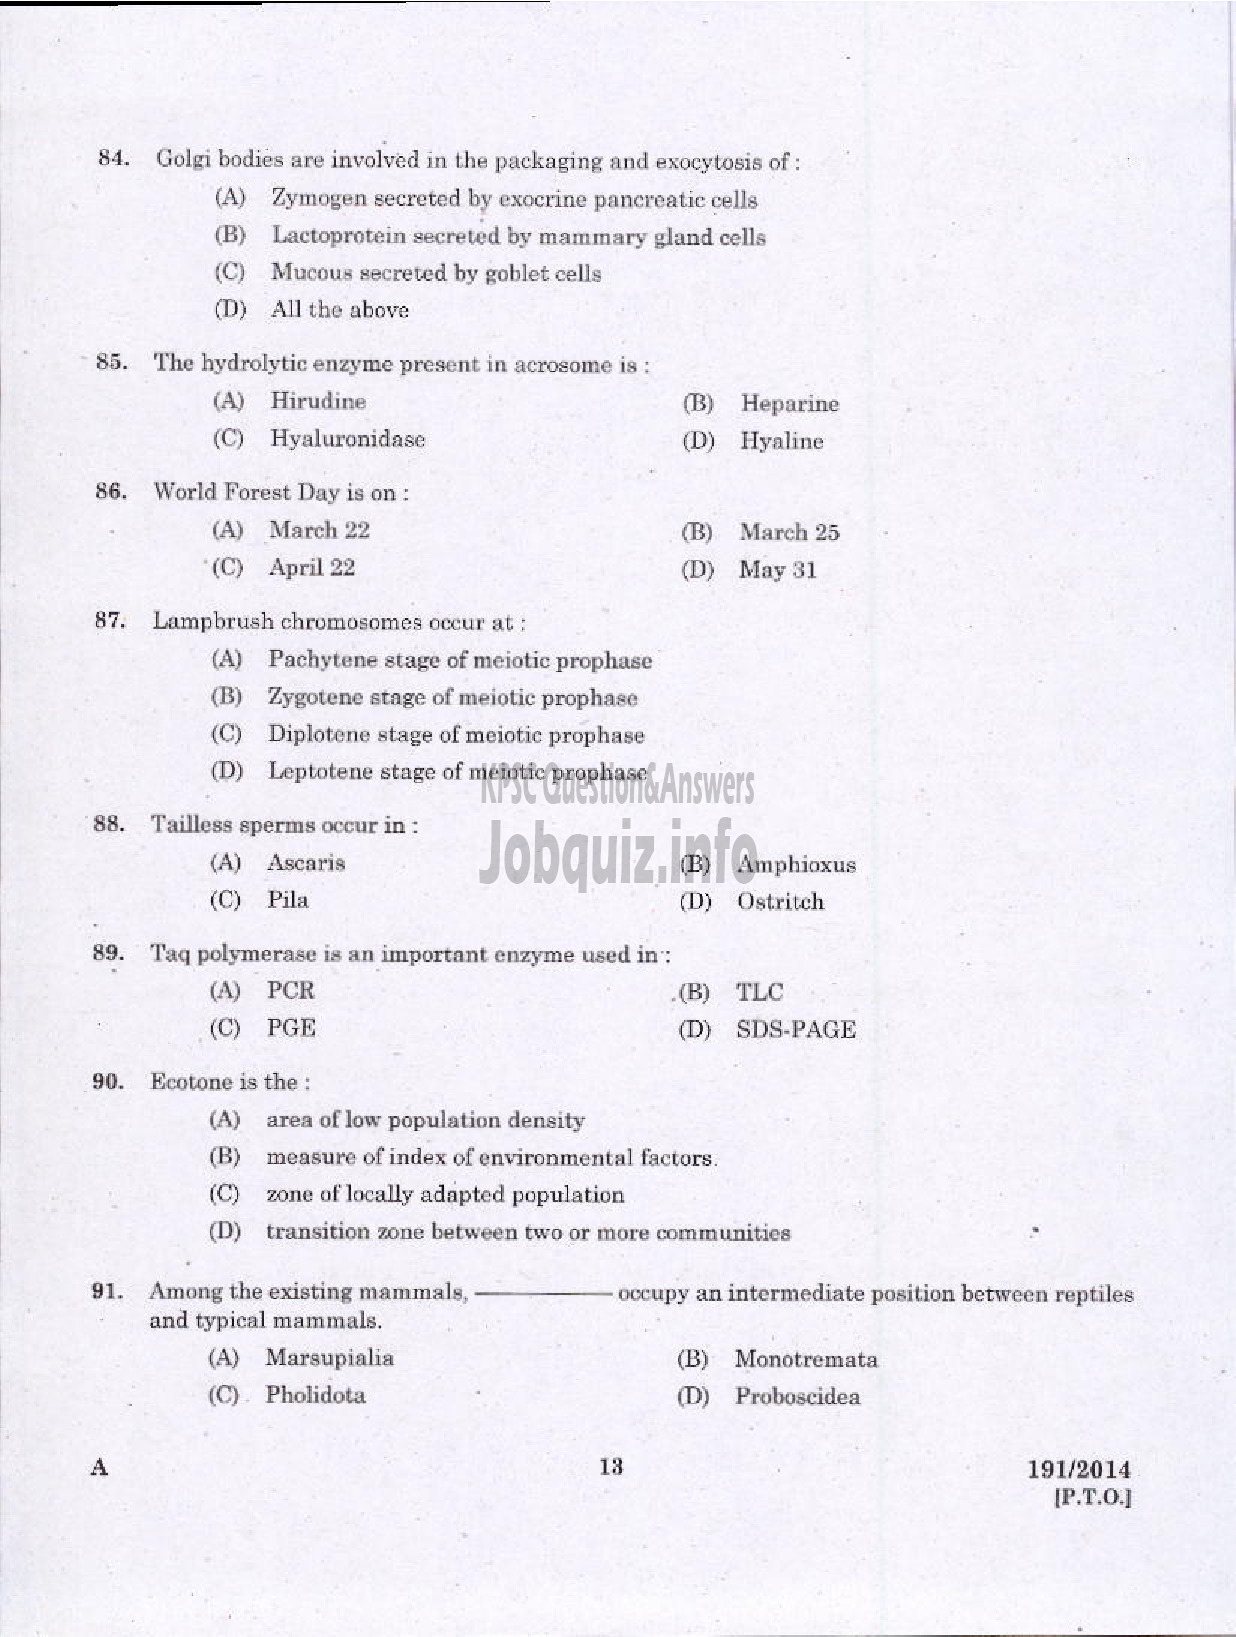 Kerala PSC Question Paper - FIELD OFFICER KERALA FOREST DEVELOPMENT CORPORATION LTD-11